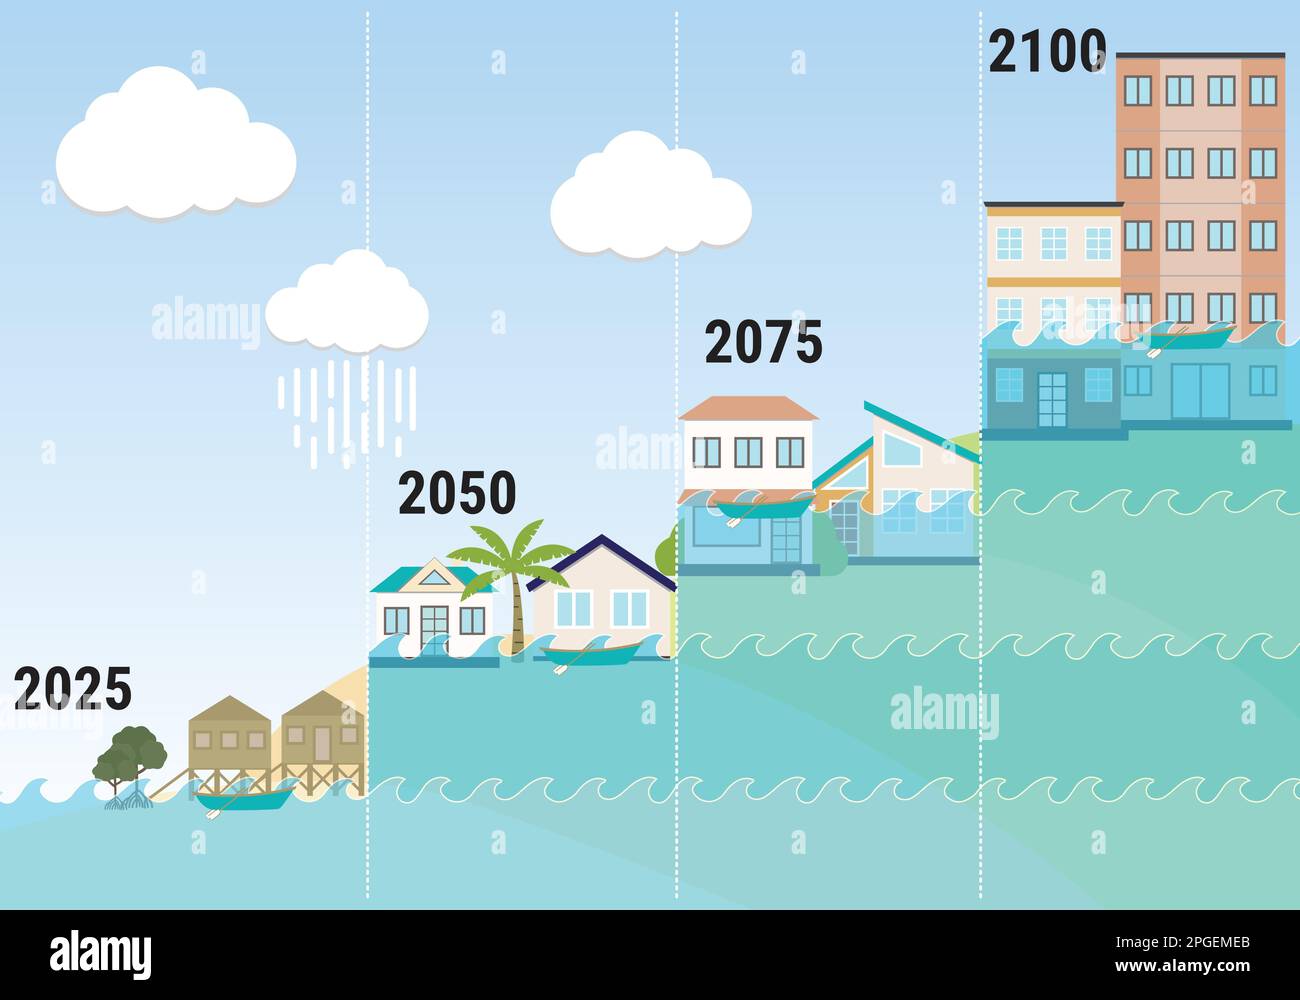 Infografica sull'innalzamento del livello del mare. Rischi e conseguenze dell'immersione e aumento delle inondazioni delle terre costiere. Riscaldamento globale e cambiamento climatico nelle città. Illustrazione Vettoriale